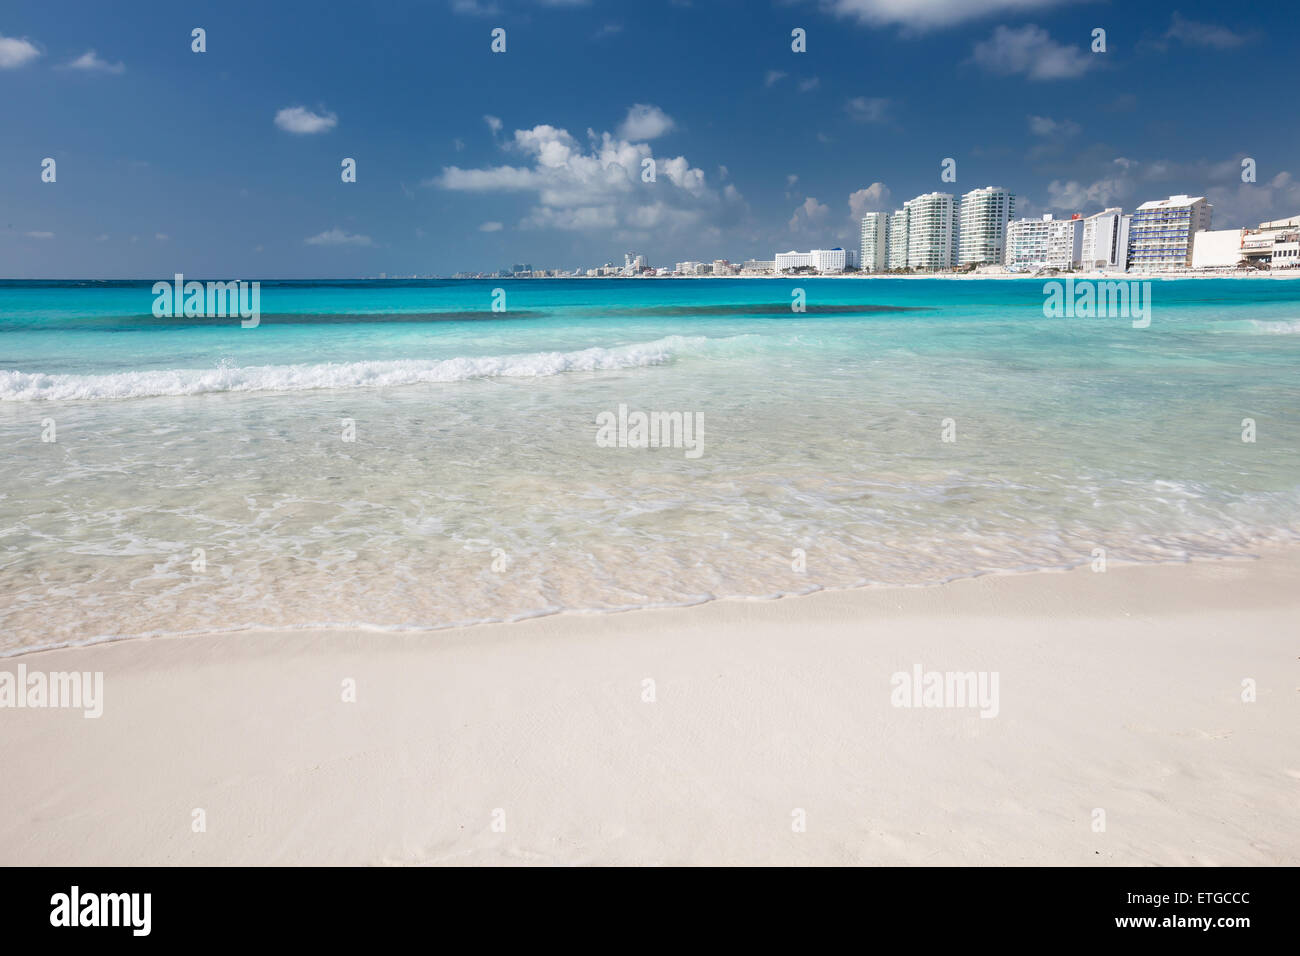 Caraibi spiaggia sabbiosa con acqua turchese Foto Stock